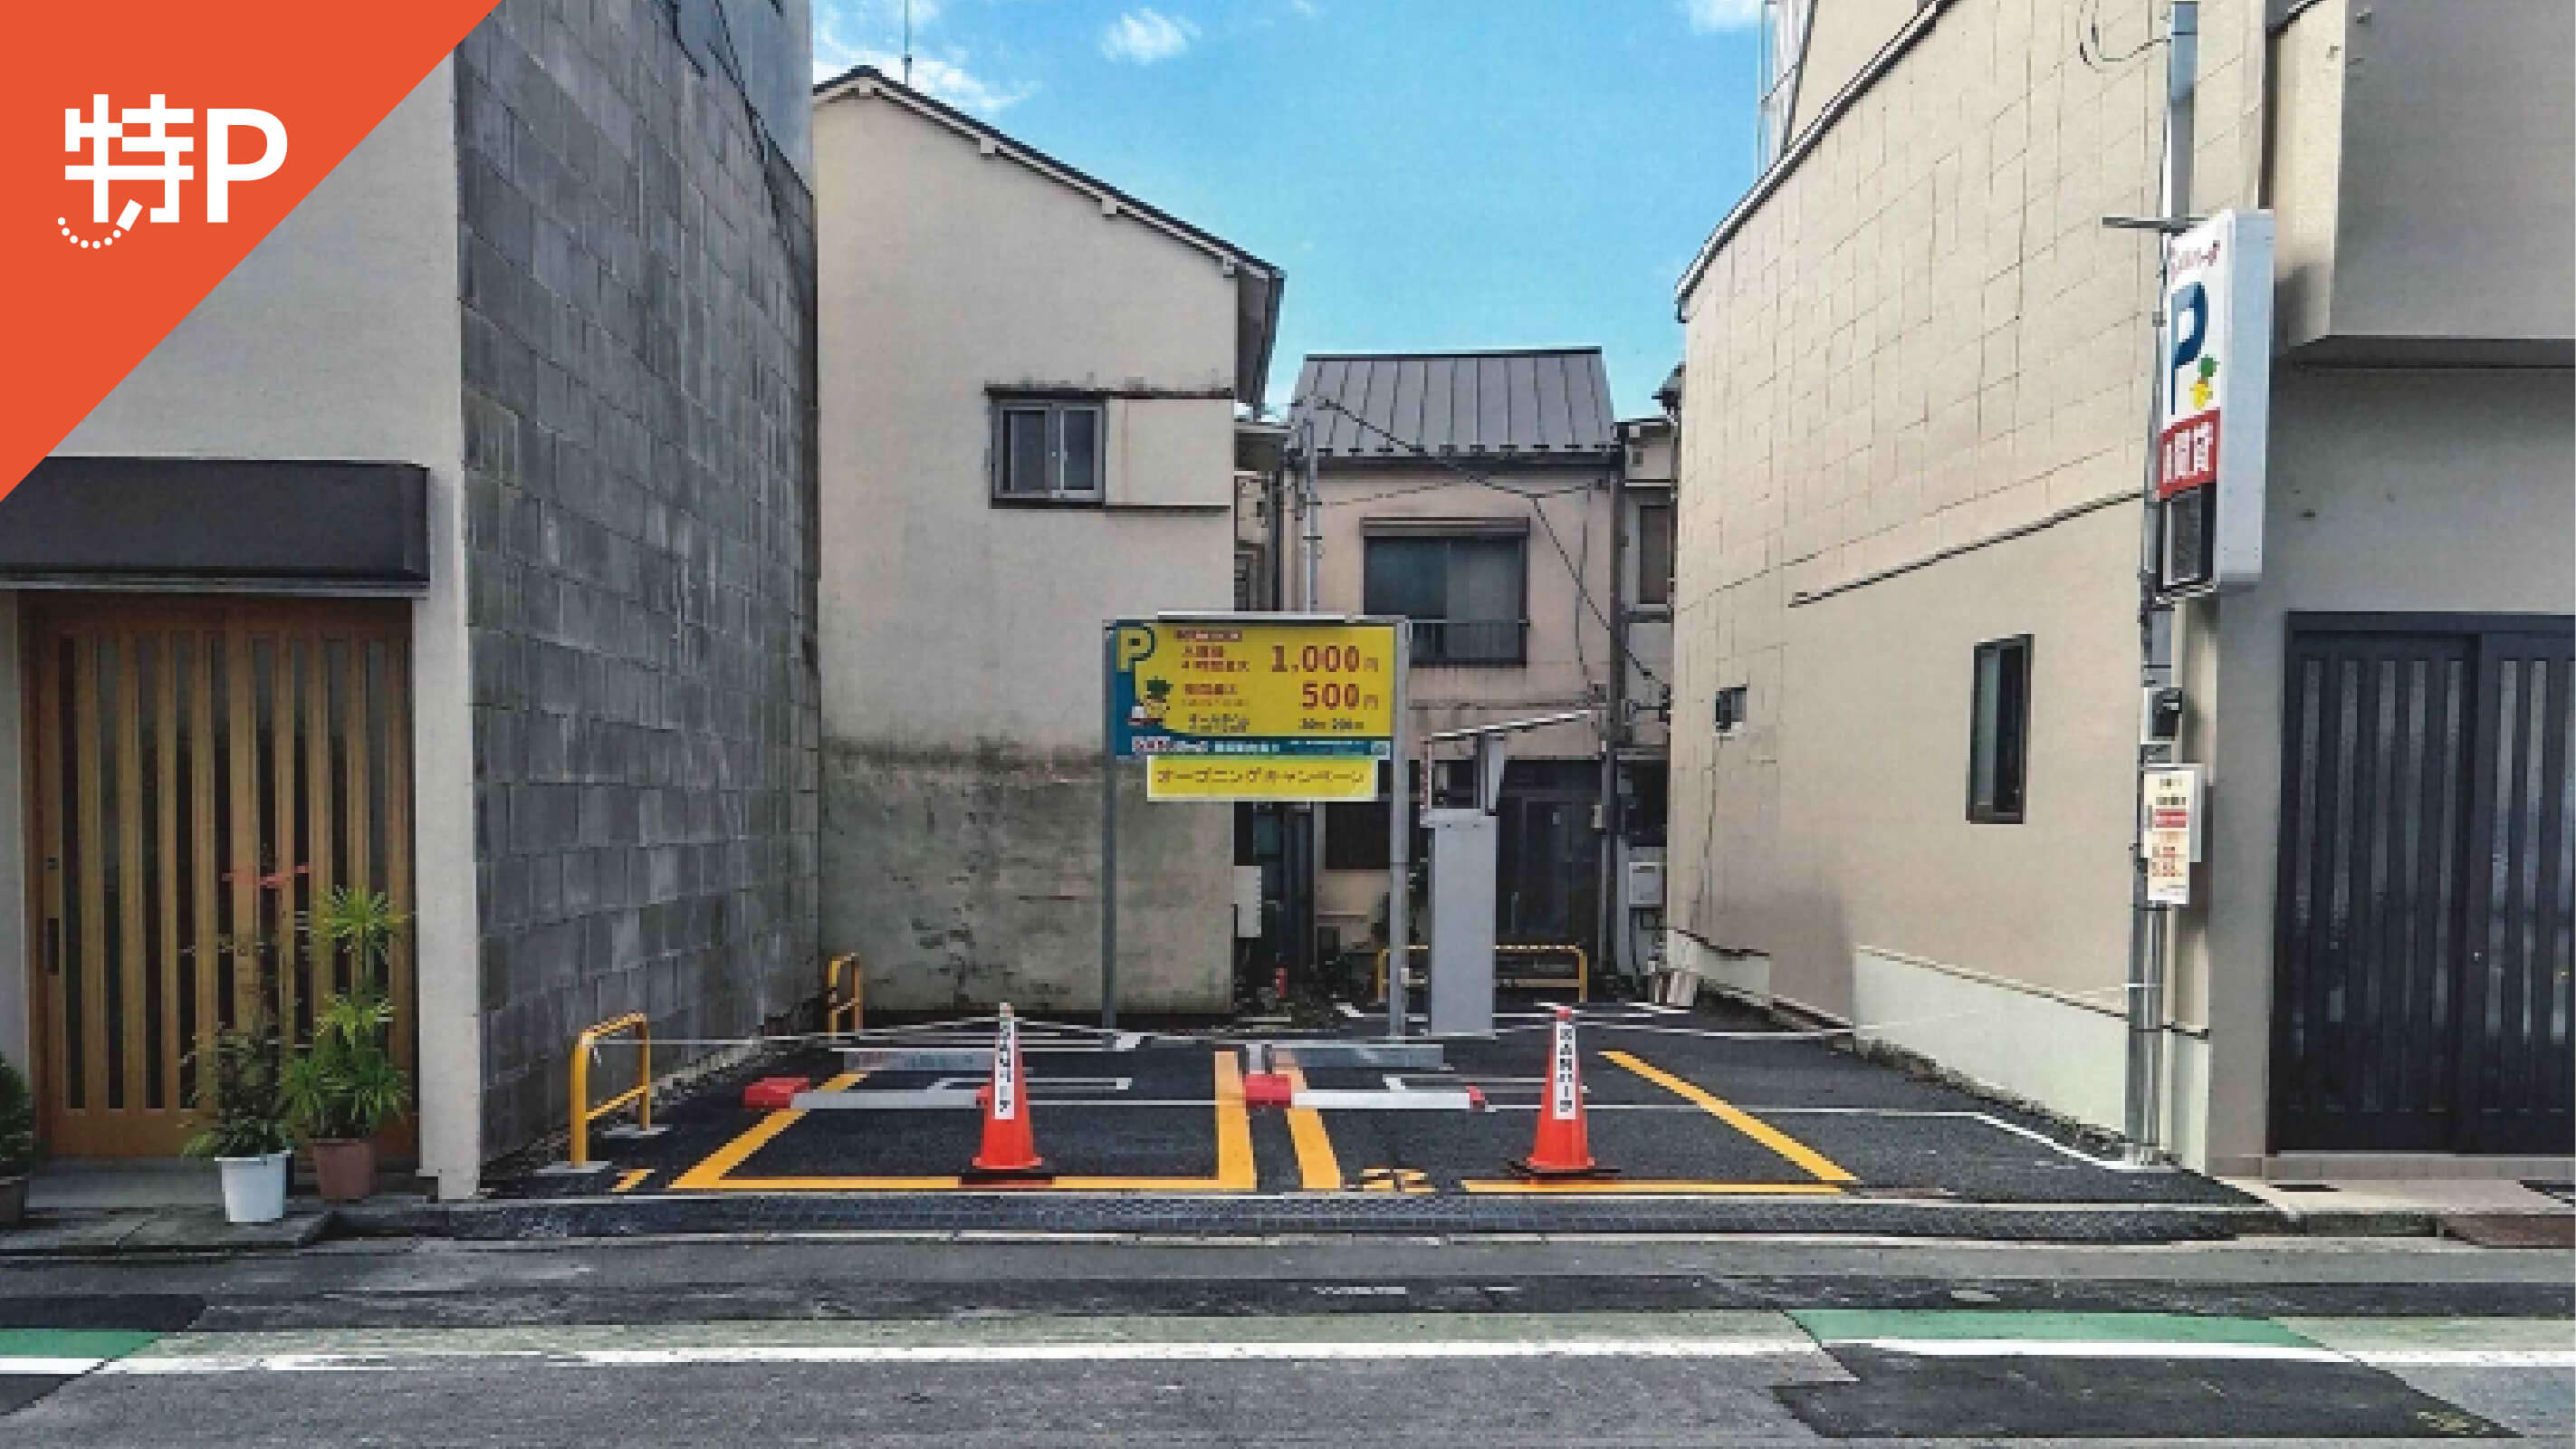 【予約制】特P 《バイク専用》SANパーク墨田東向島3 駐車場の画像1